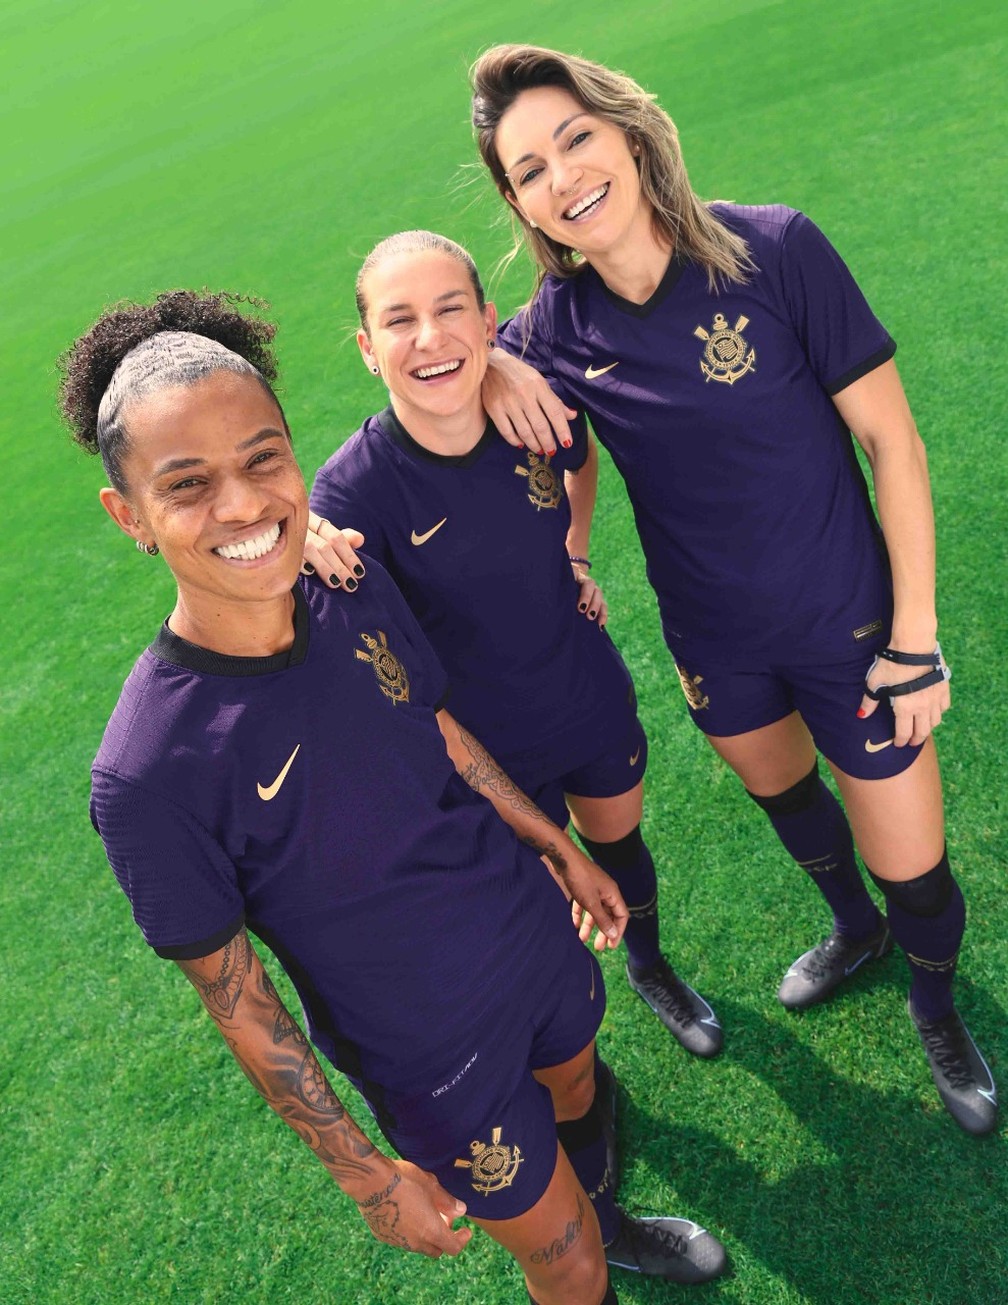 Novo uniforme faz homenagem às mulheres — Foto: Divulgação/Nike